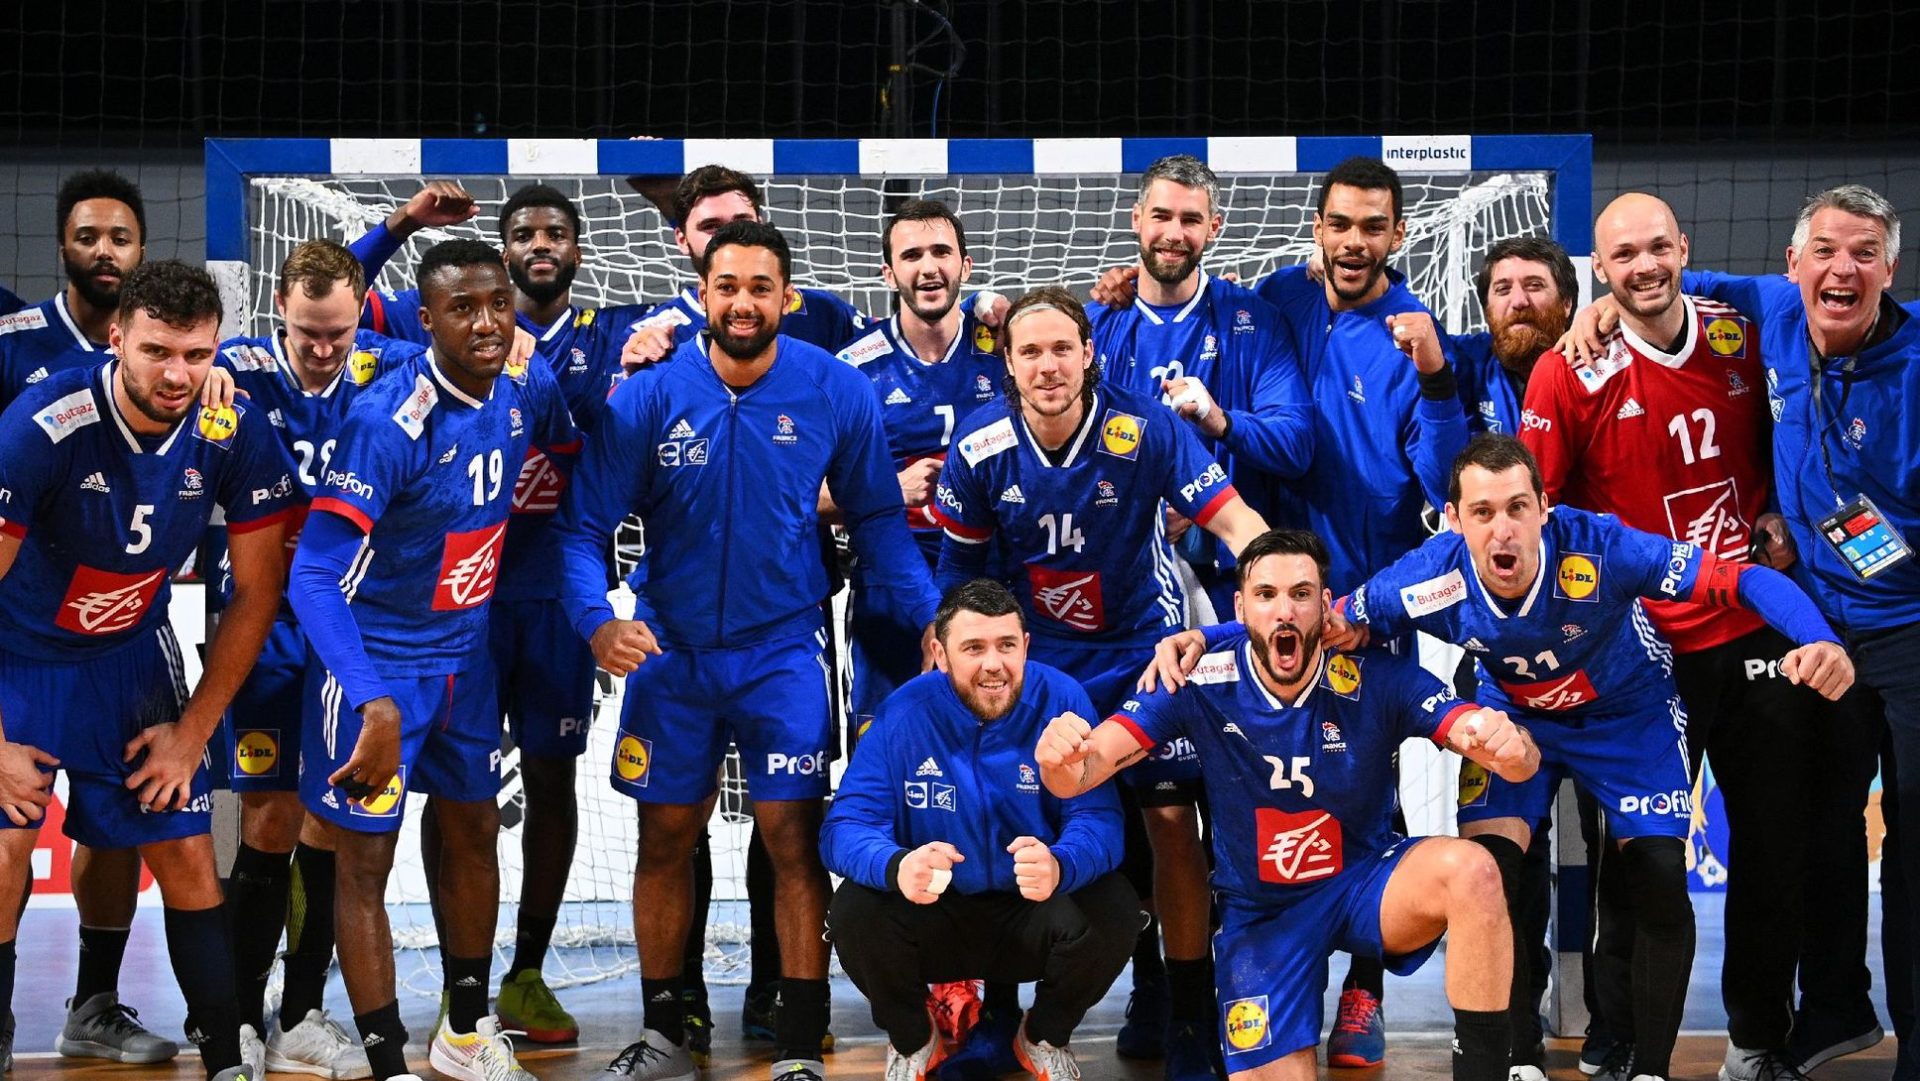 Handball en France : Succès de l'Équipe Nationale et Engouement Populaire